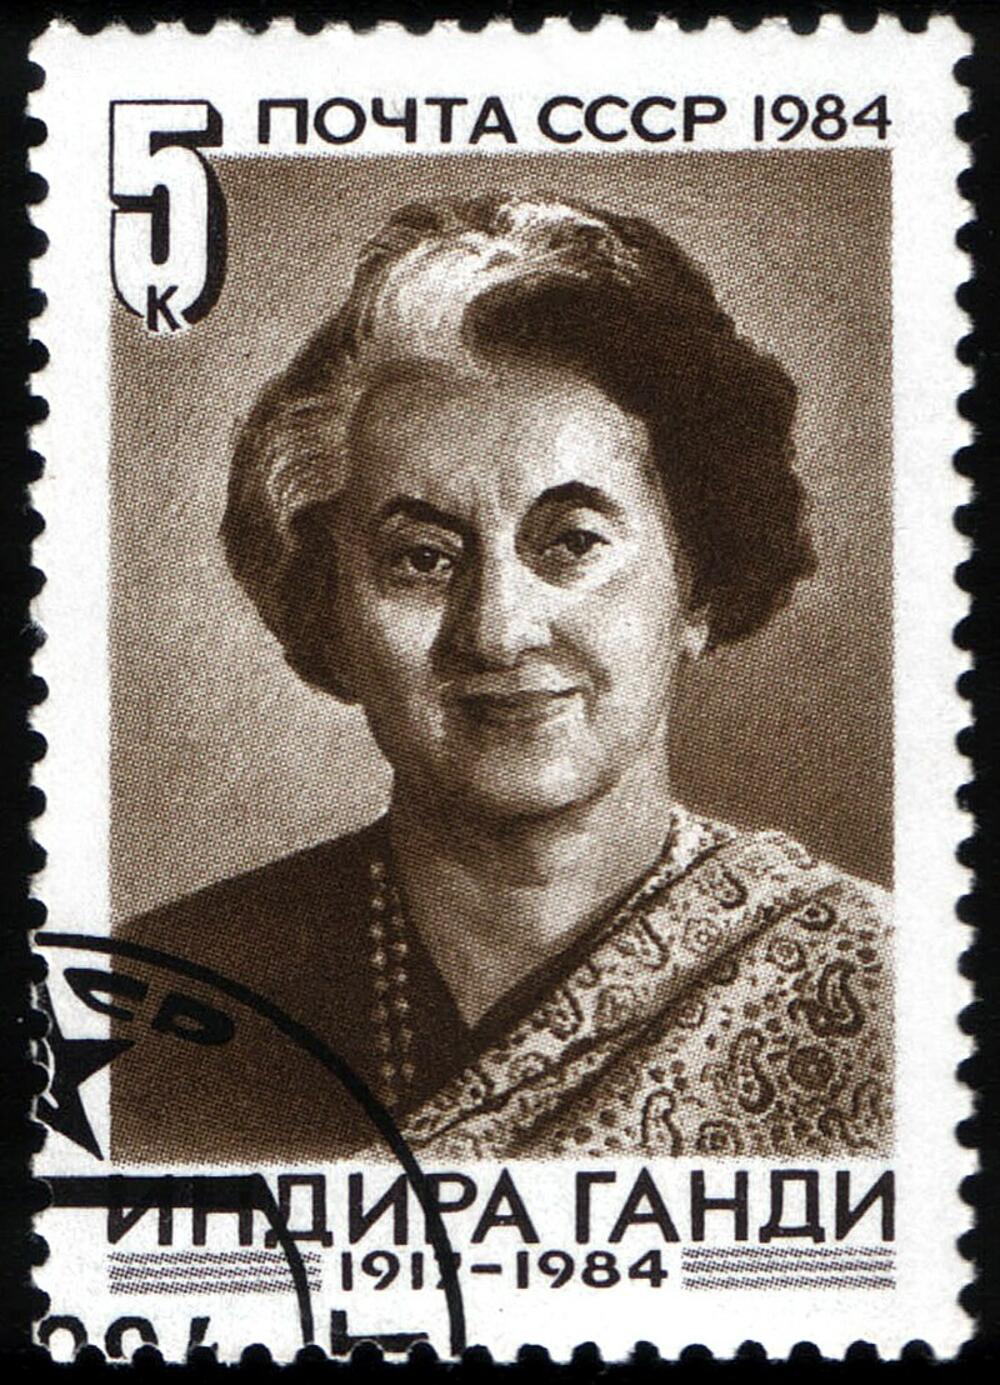  Indira Gandi